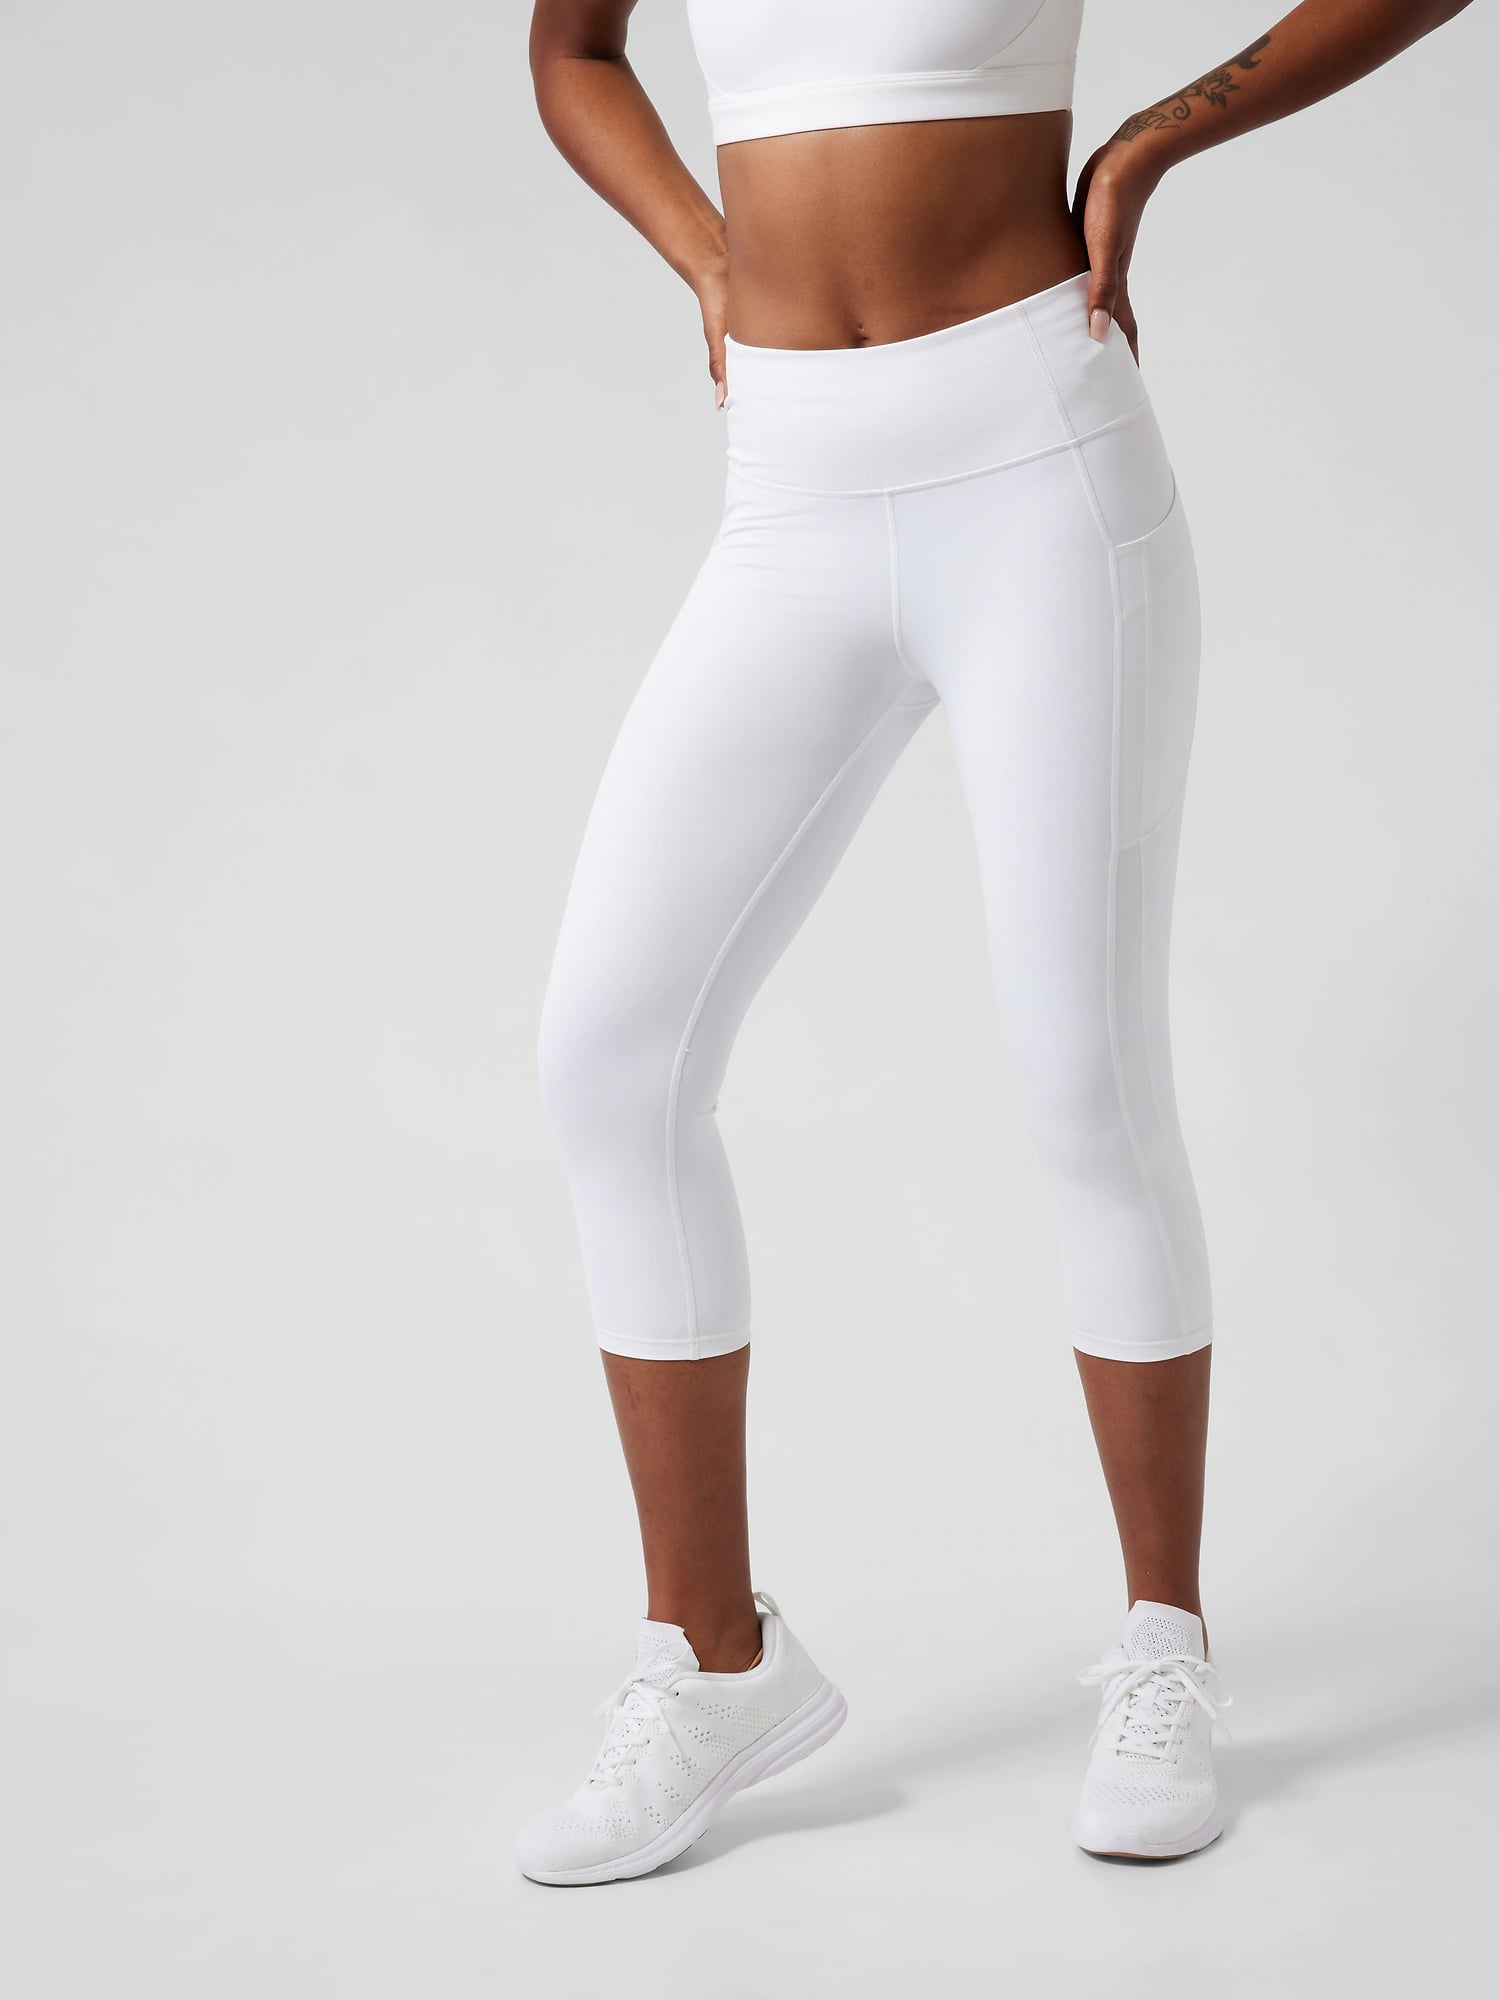 Slim Fit Gym Top Women Leggings Bed Trouser White Legging Women